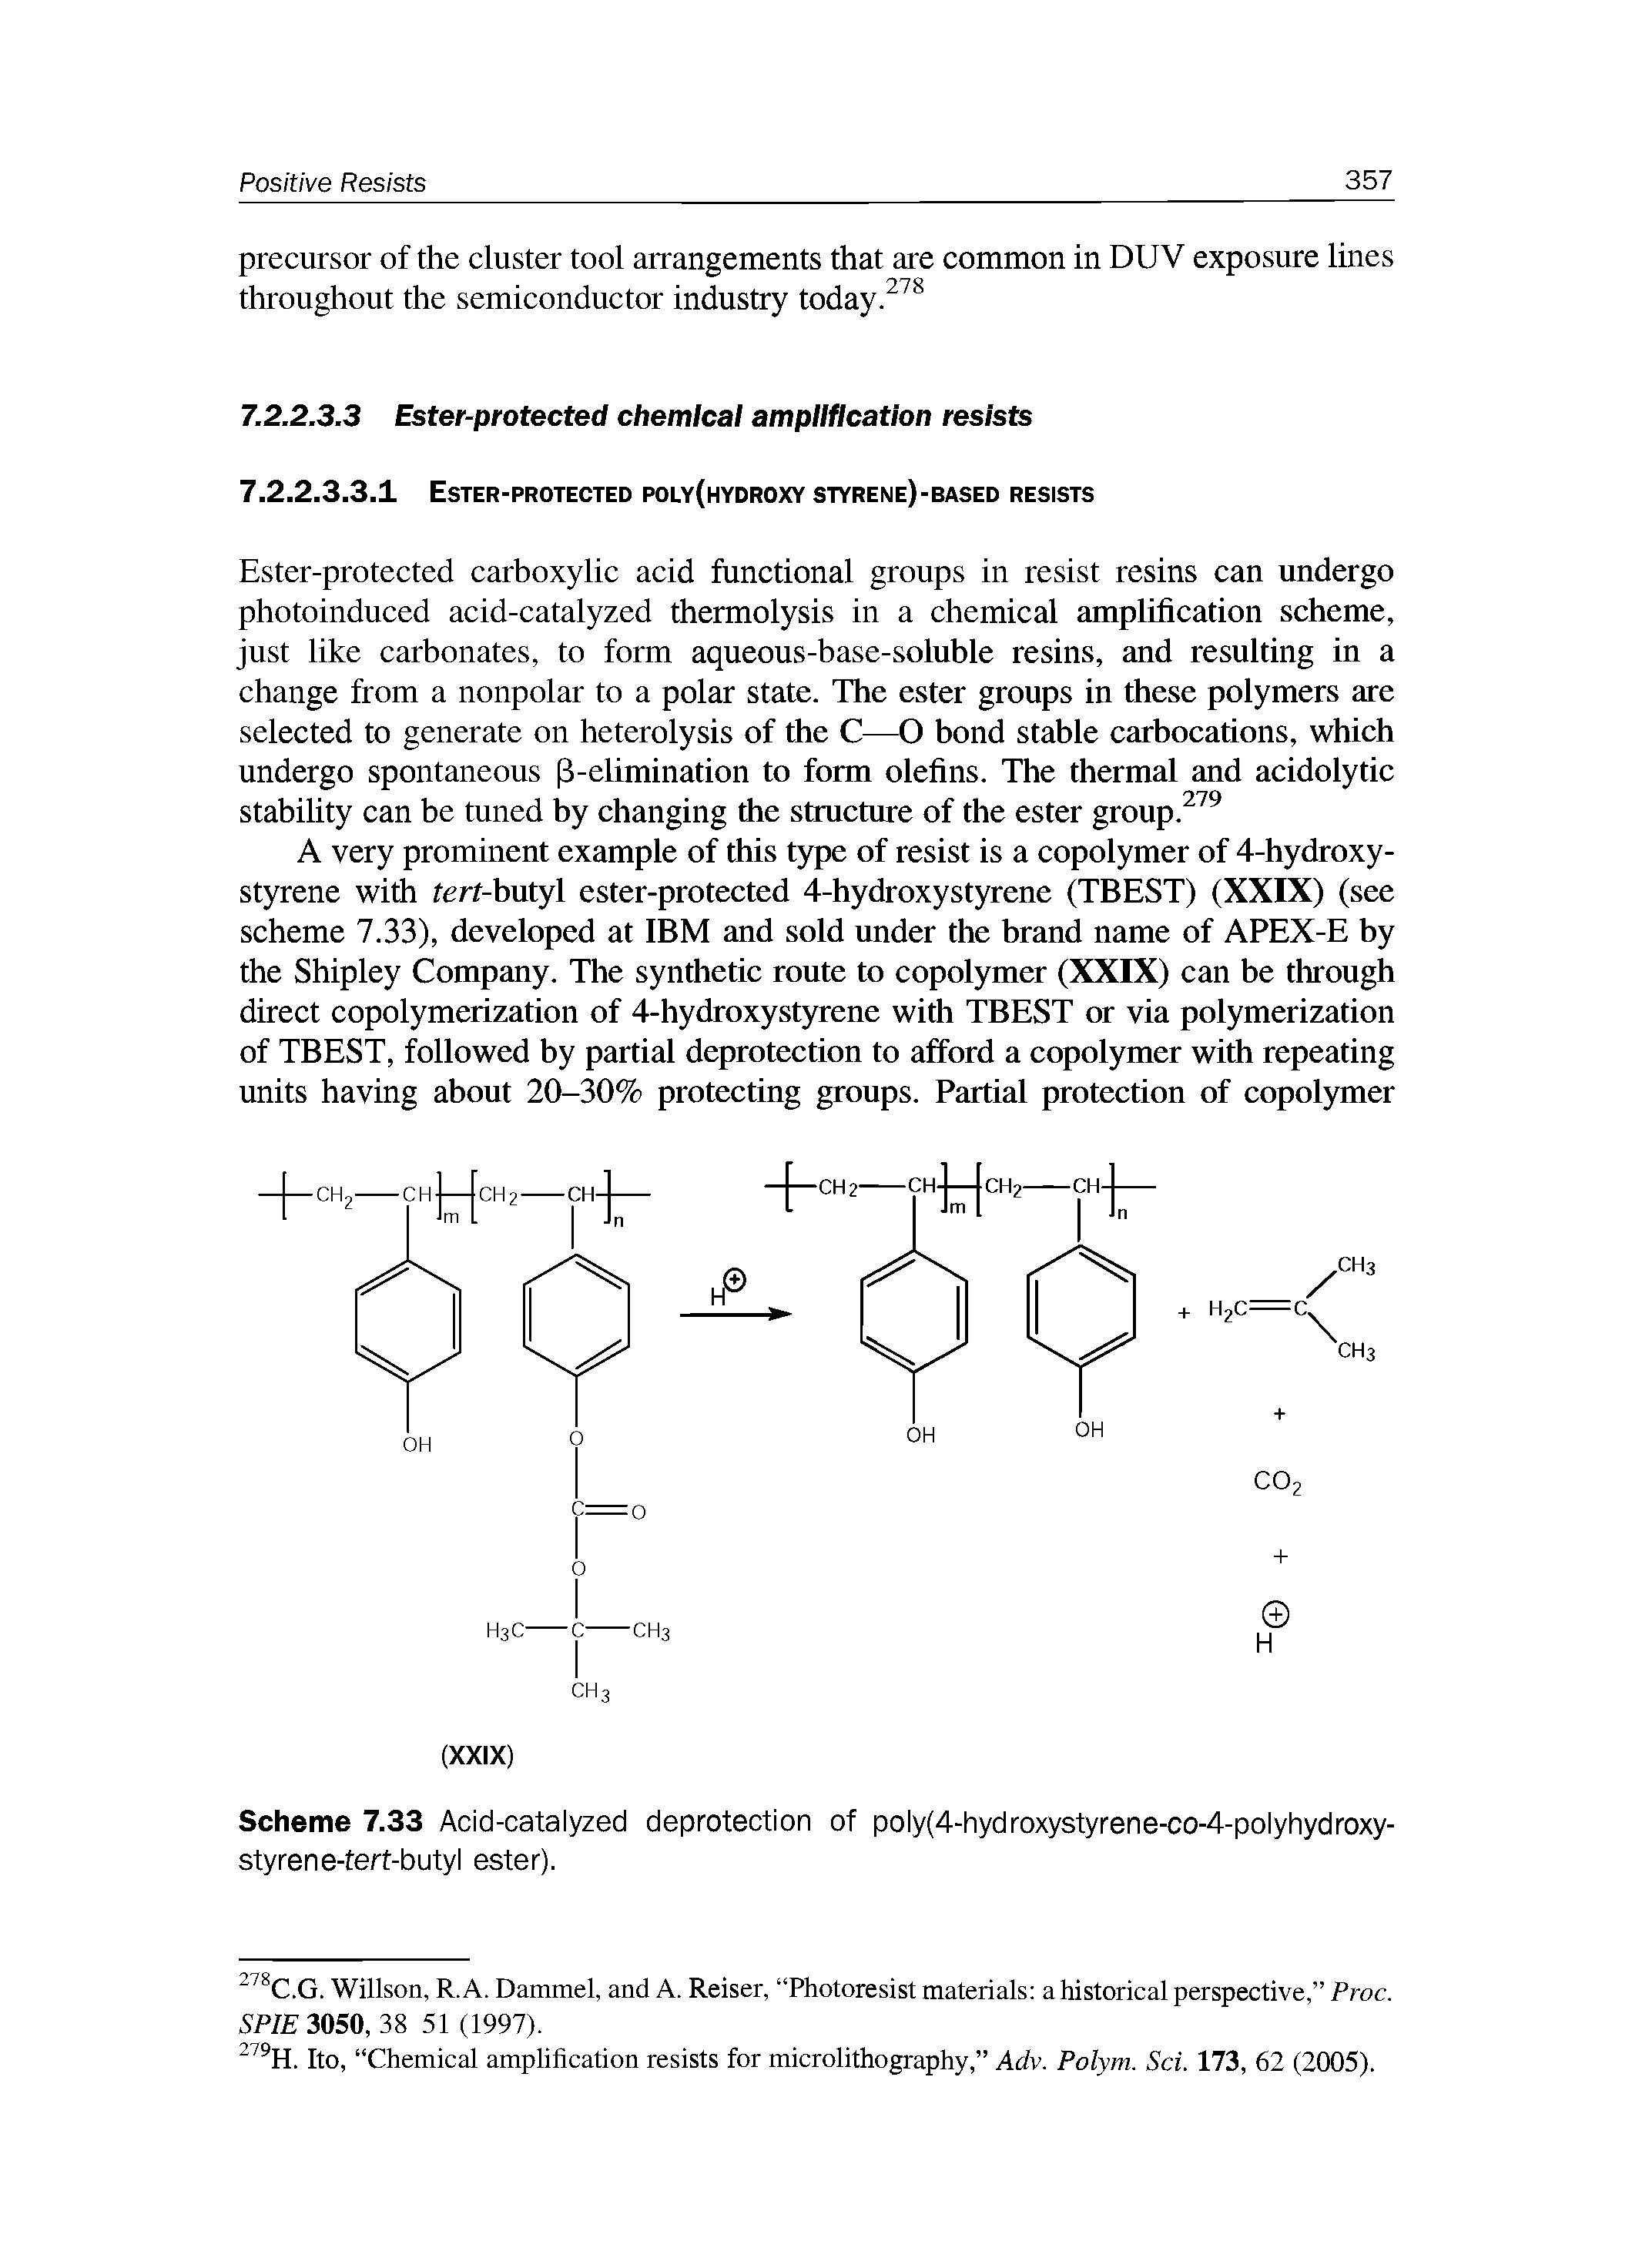 Scheme 7.33 Acid-catalyzed deprotection of poly(4-hydroxystyrene-co-4-polyhydroxy-styrene-tert-butyl ester).